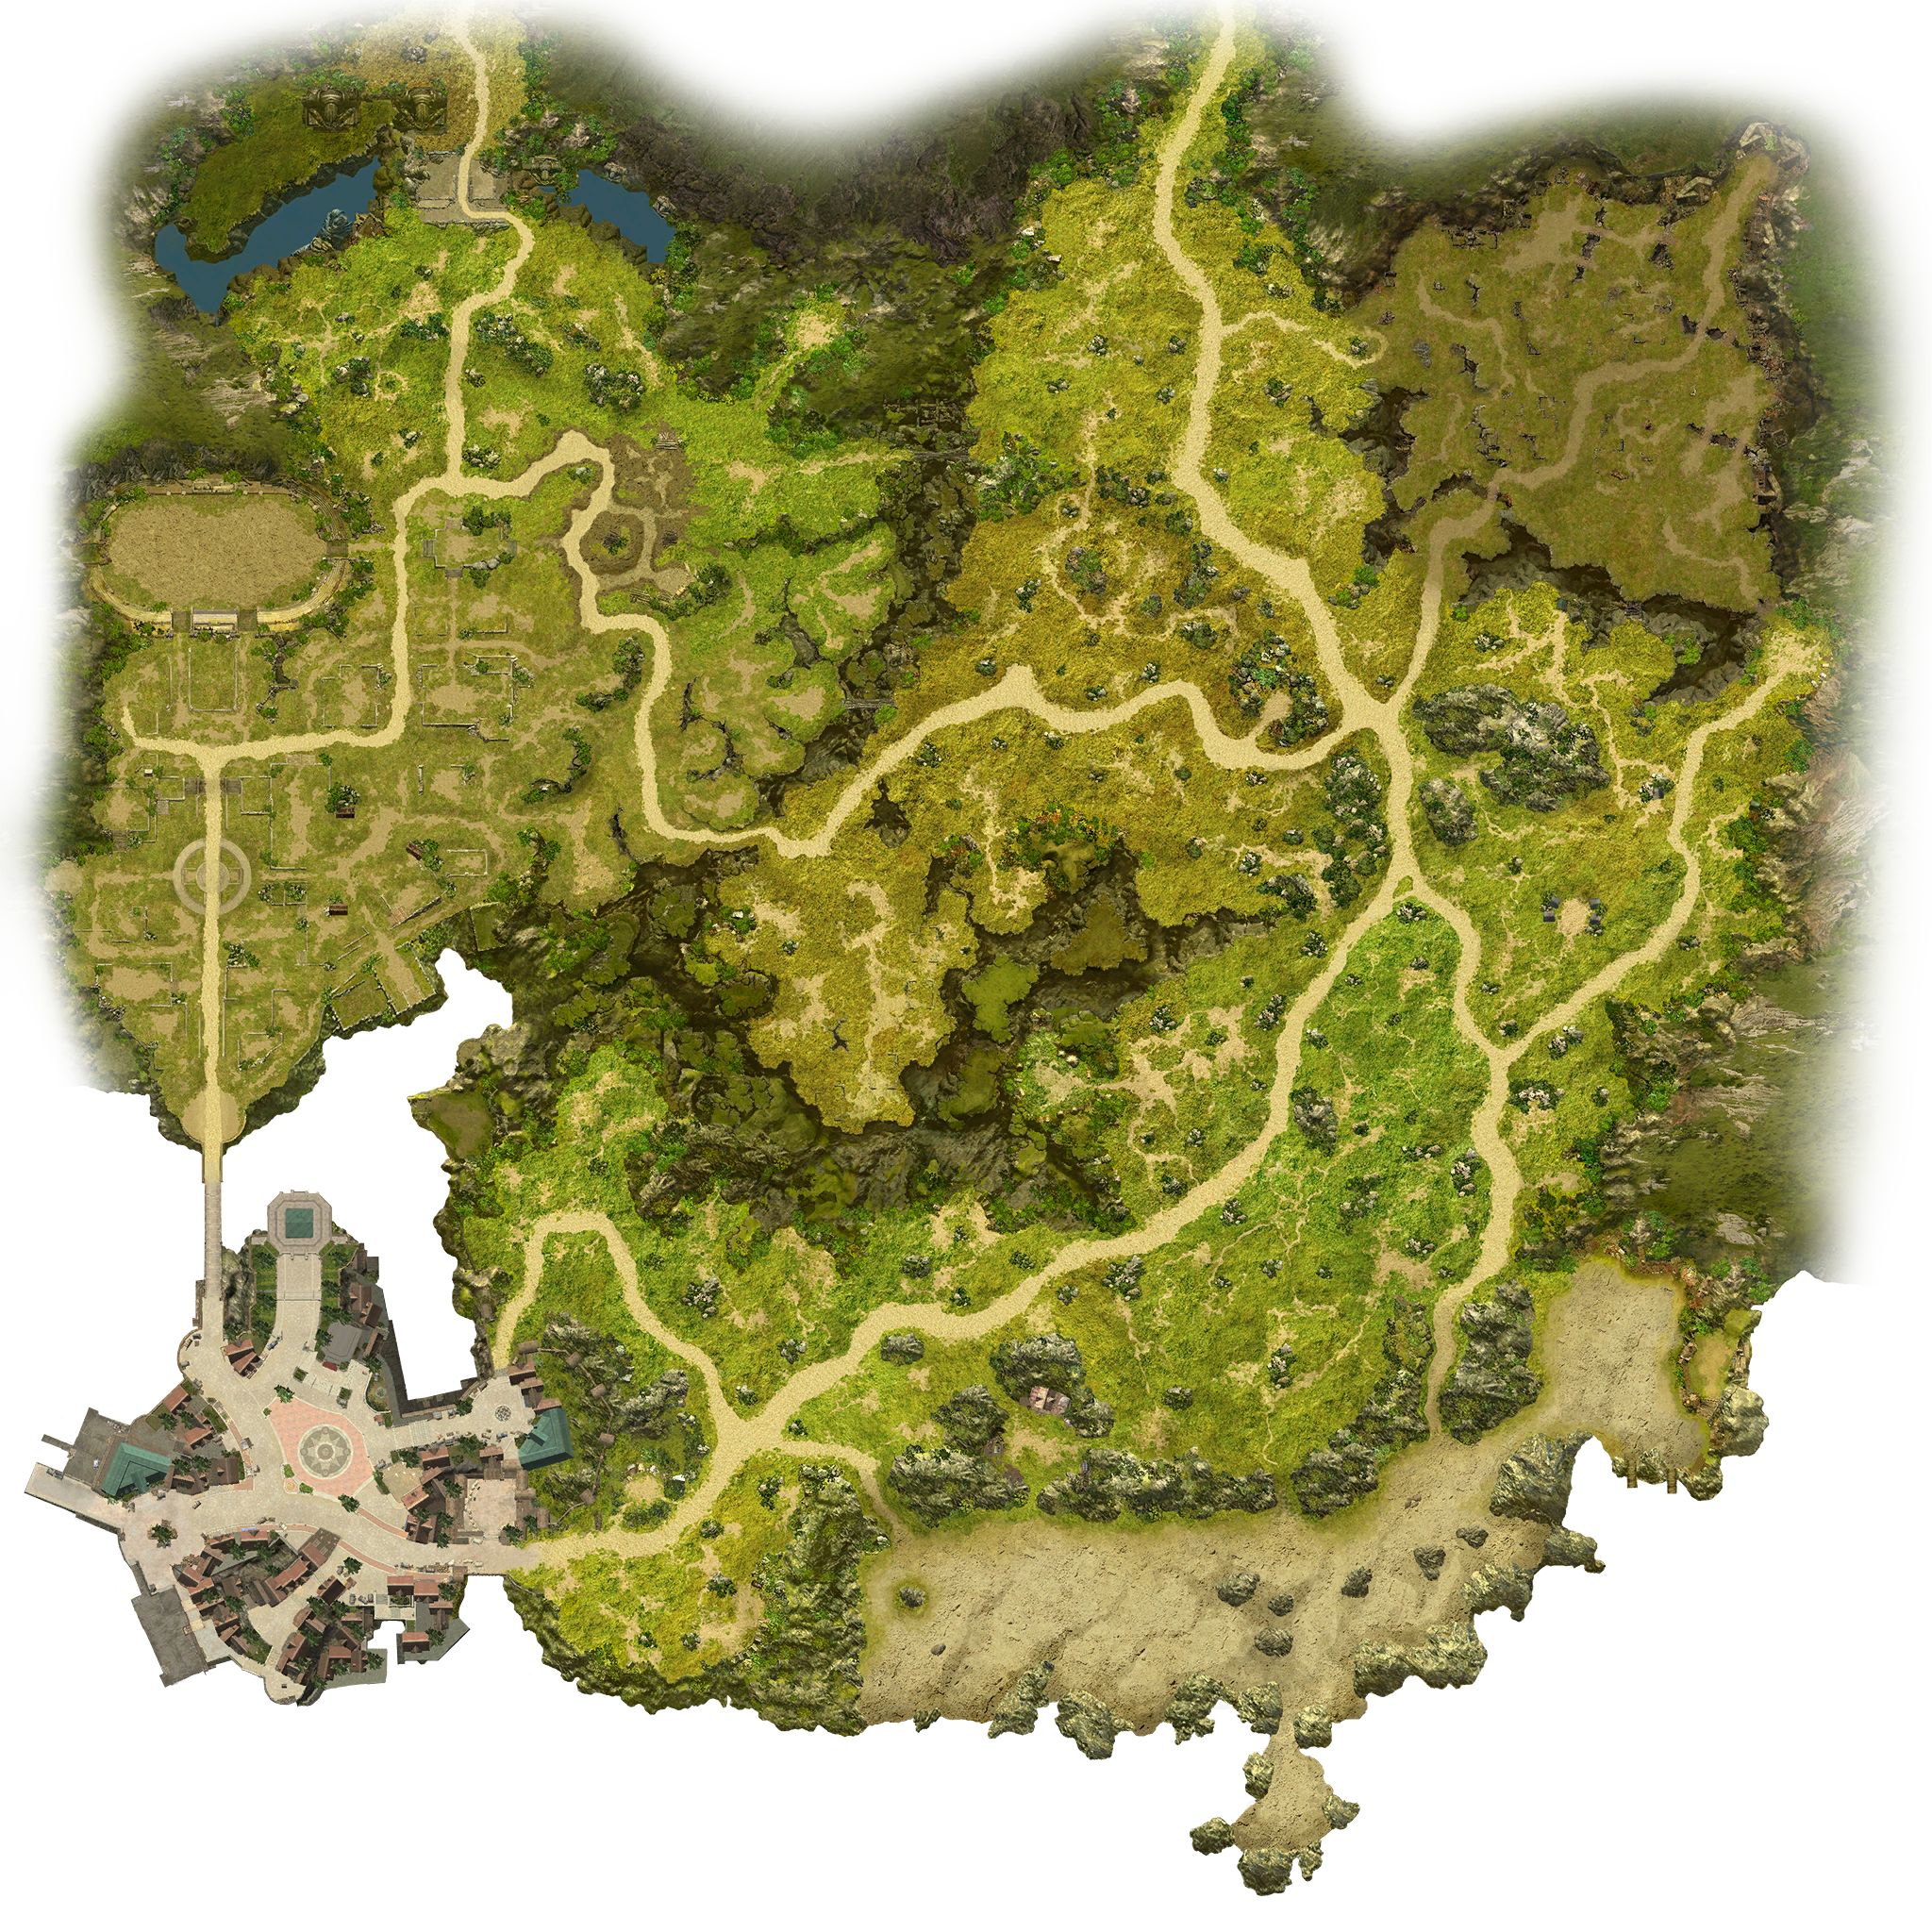 map-2